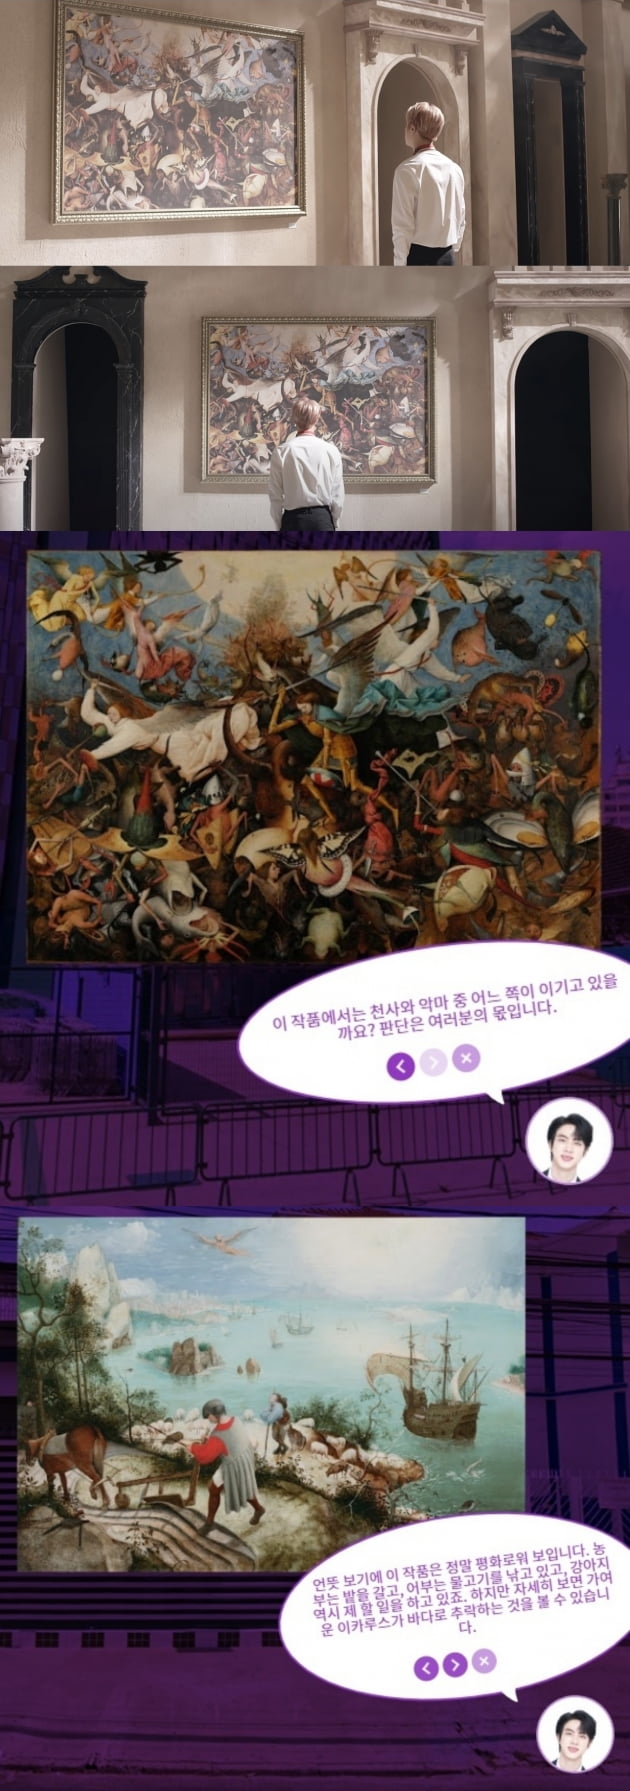 방탄소년단 진, 상파울로 '스트리트 갤러리' 에서 보인 작품세계 